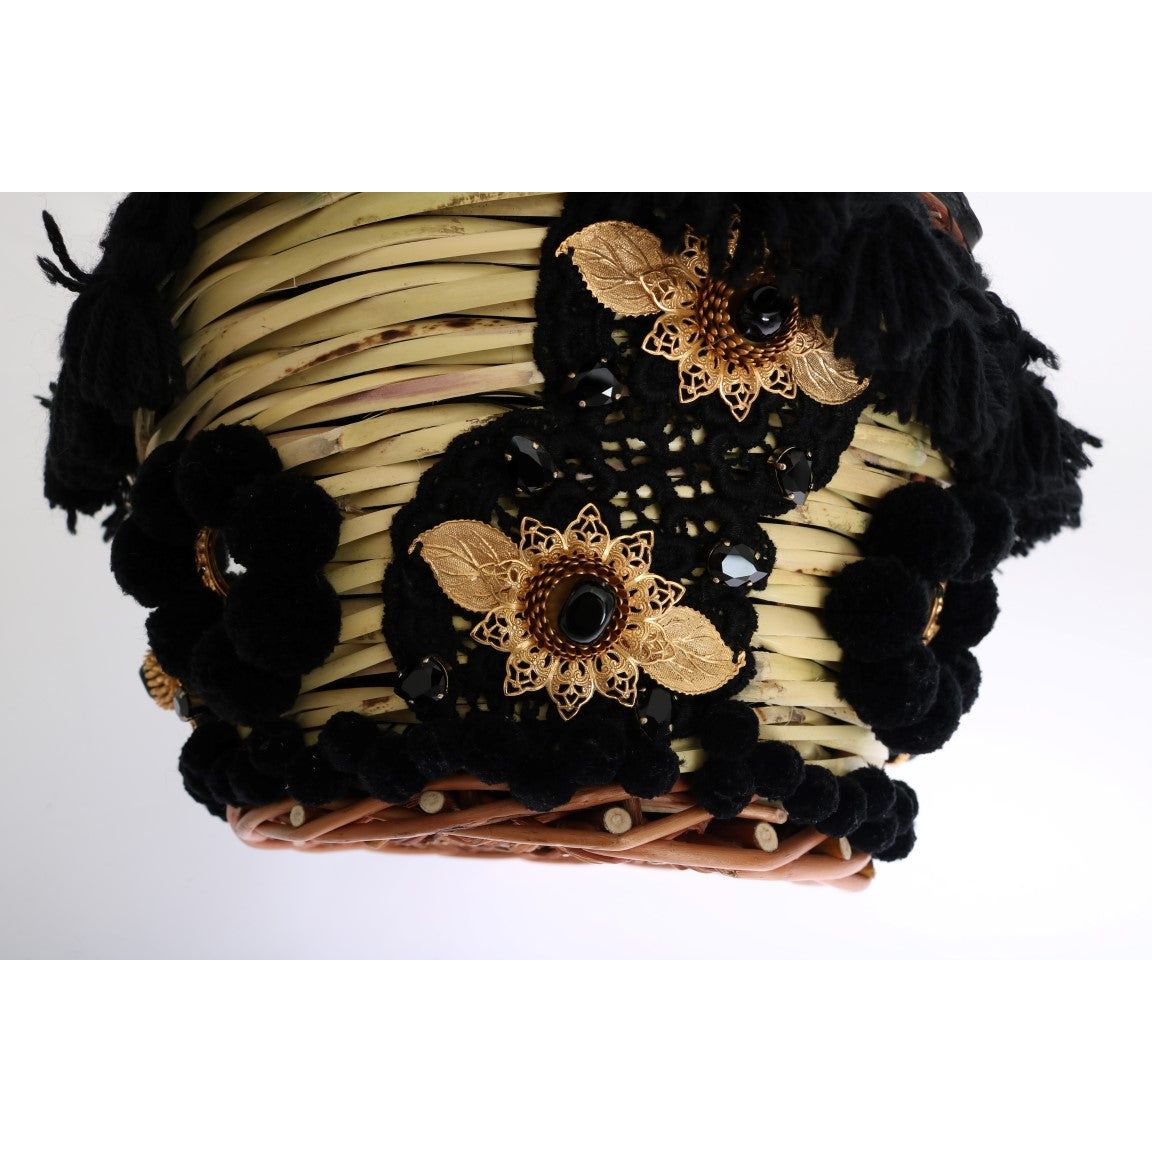 Dolce & Gabbana | Chic Beige & Black Straw Snakeskin Bucket Bag| McRichard Designer Brands   